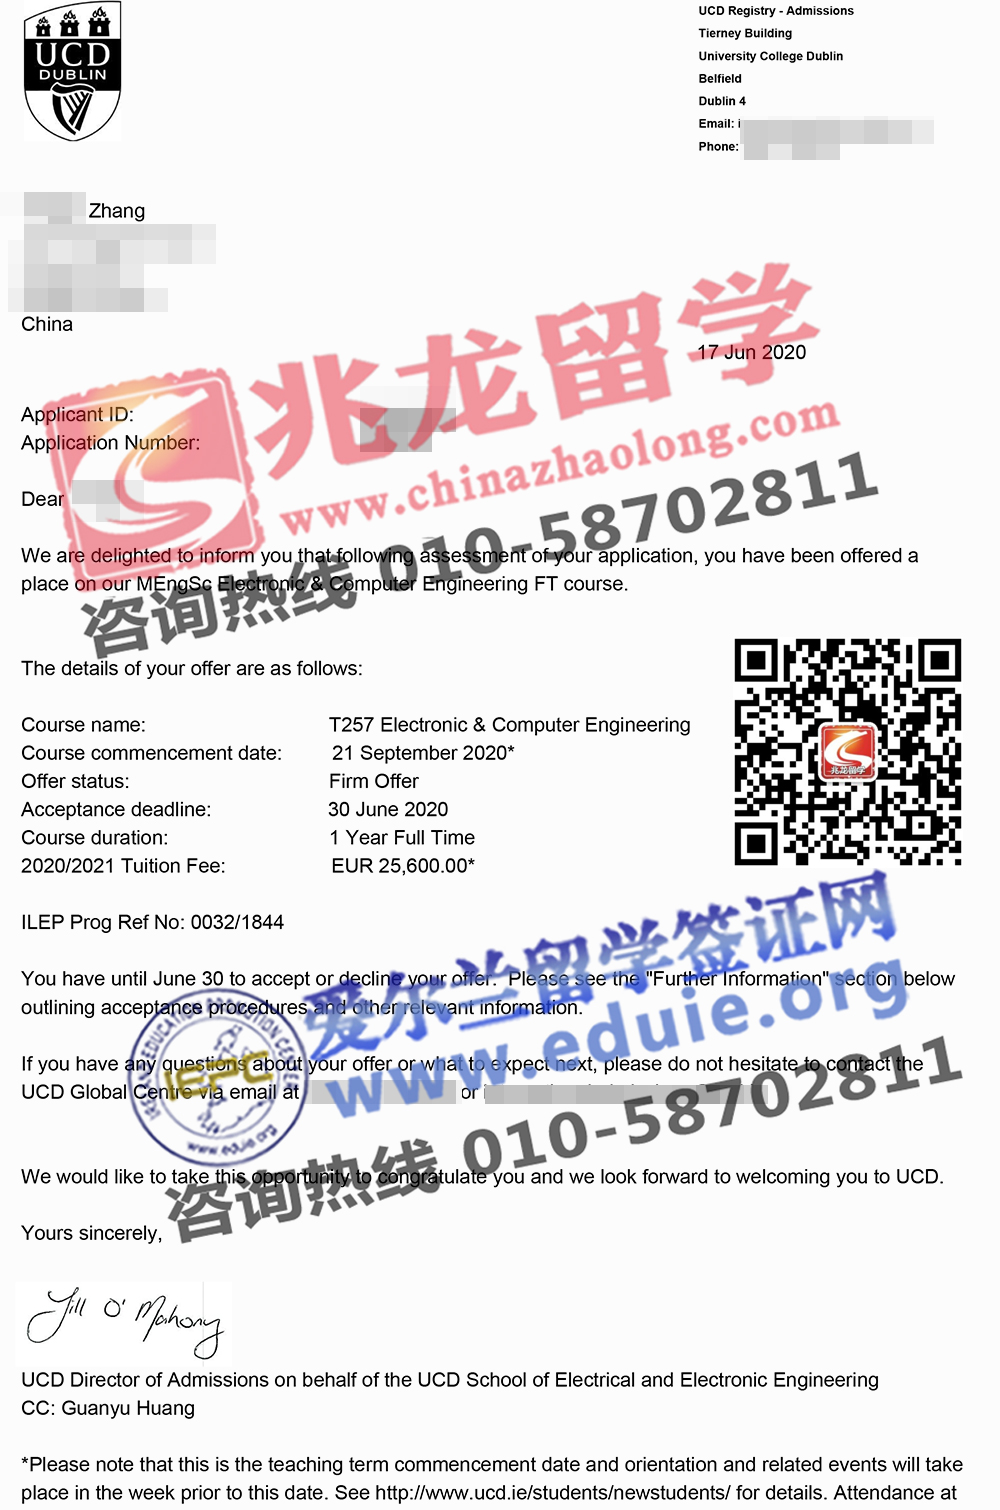 张yingbo-都柏林大学UCD电子&计算机工程硕士-无条件offer-北京兆龙留学.jpg